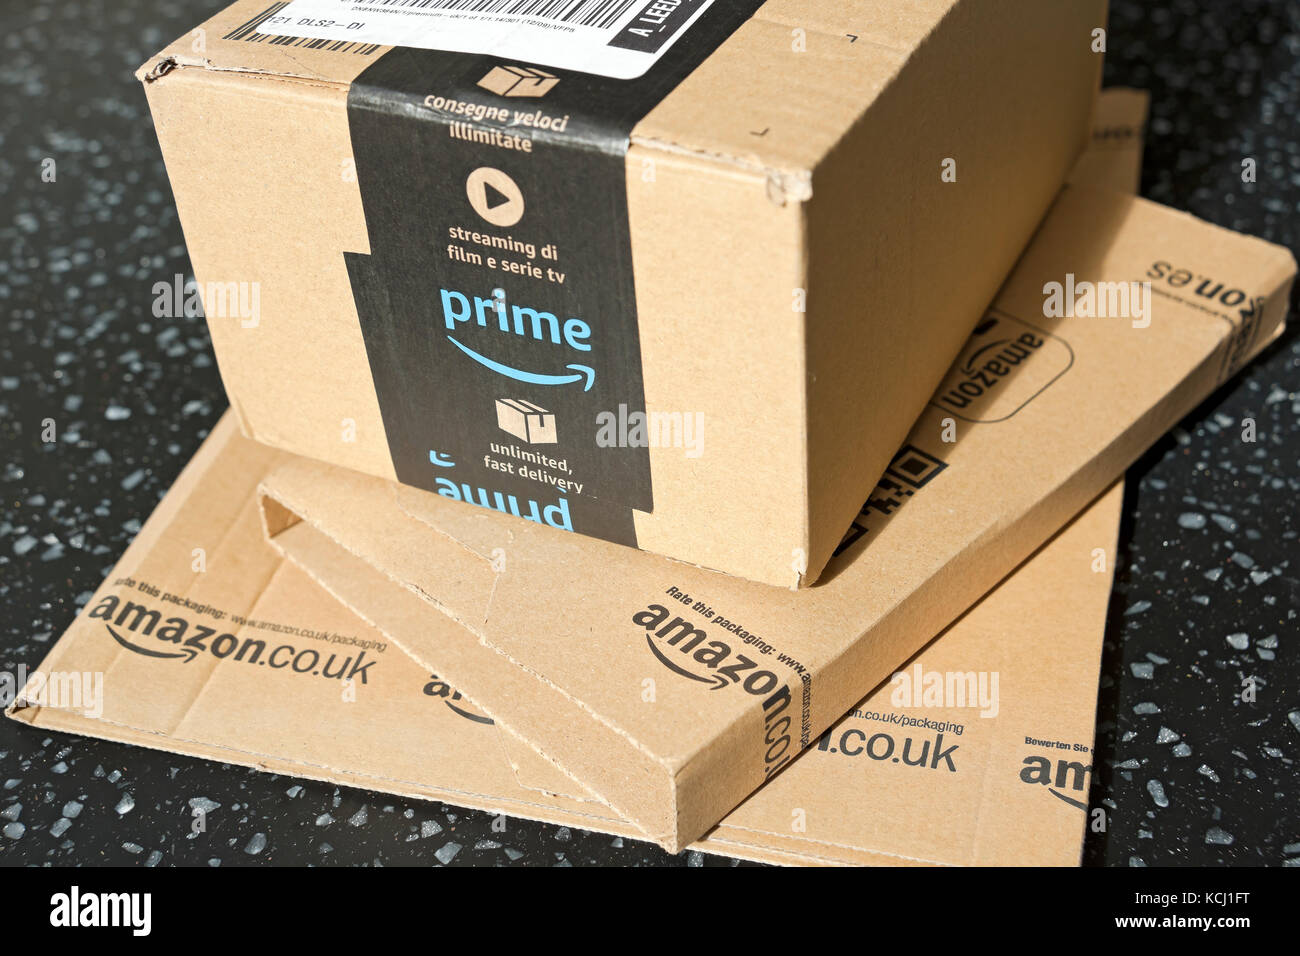 Nahaufnahme von Amazon Prime Paket Pakete Box Paket Pakete Boxen Internet  Home Shopping Lieferung England UK Vereinigtes Königreich GB Großbritannien  Stockfotografie - Alamy